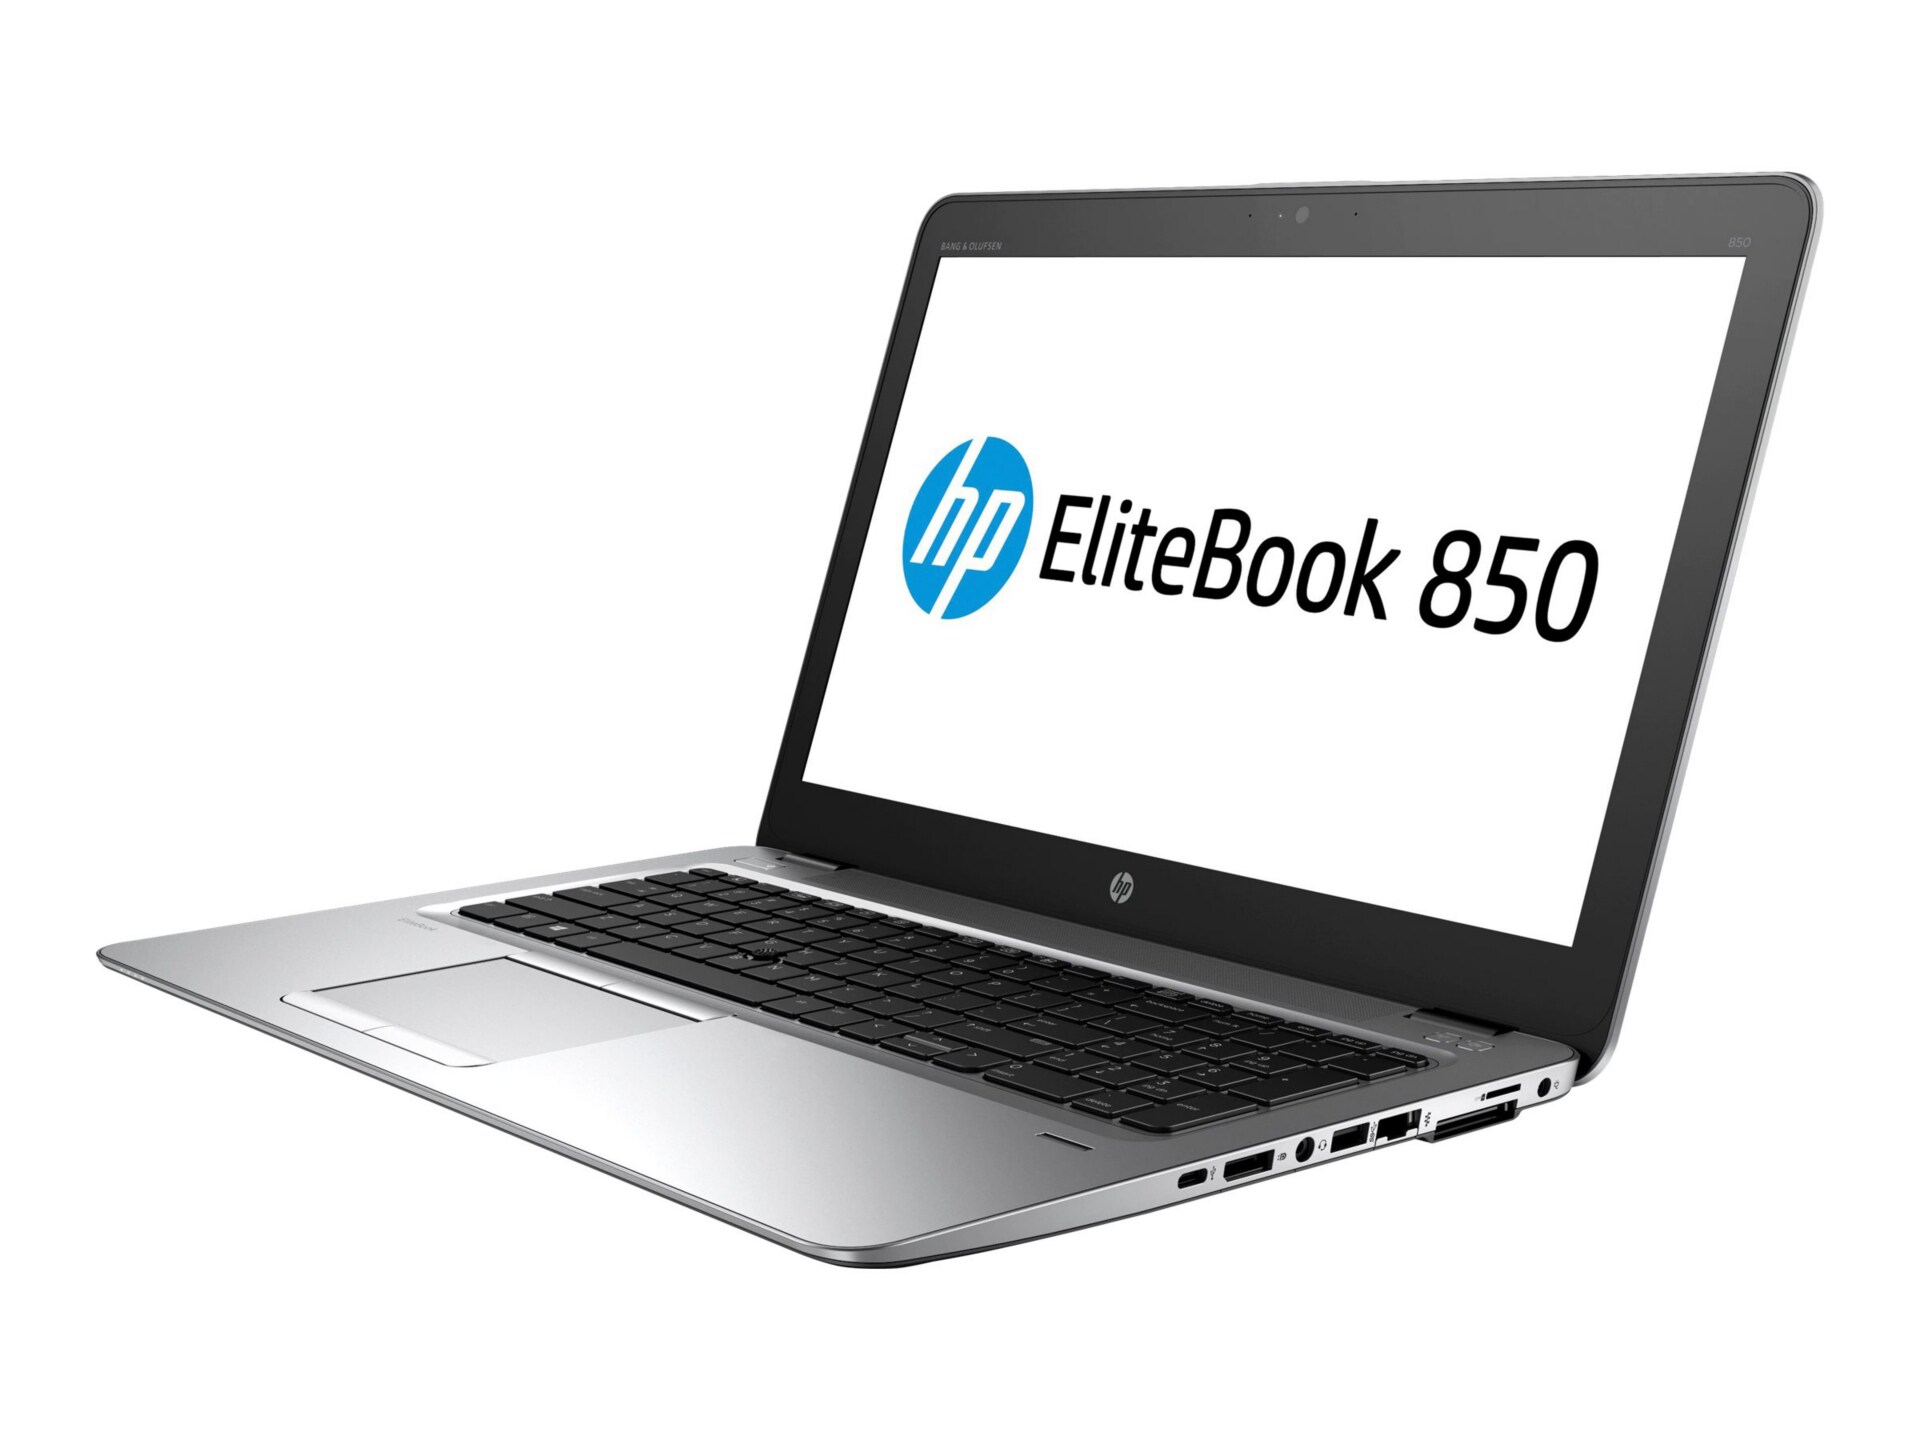 HP EliteBook 850 G4 - 15.6" - Core i7 7600U - 16 GB RAM - 256 GB SSD - US